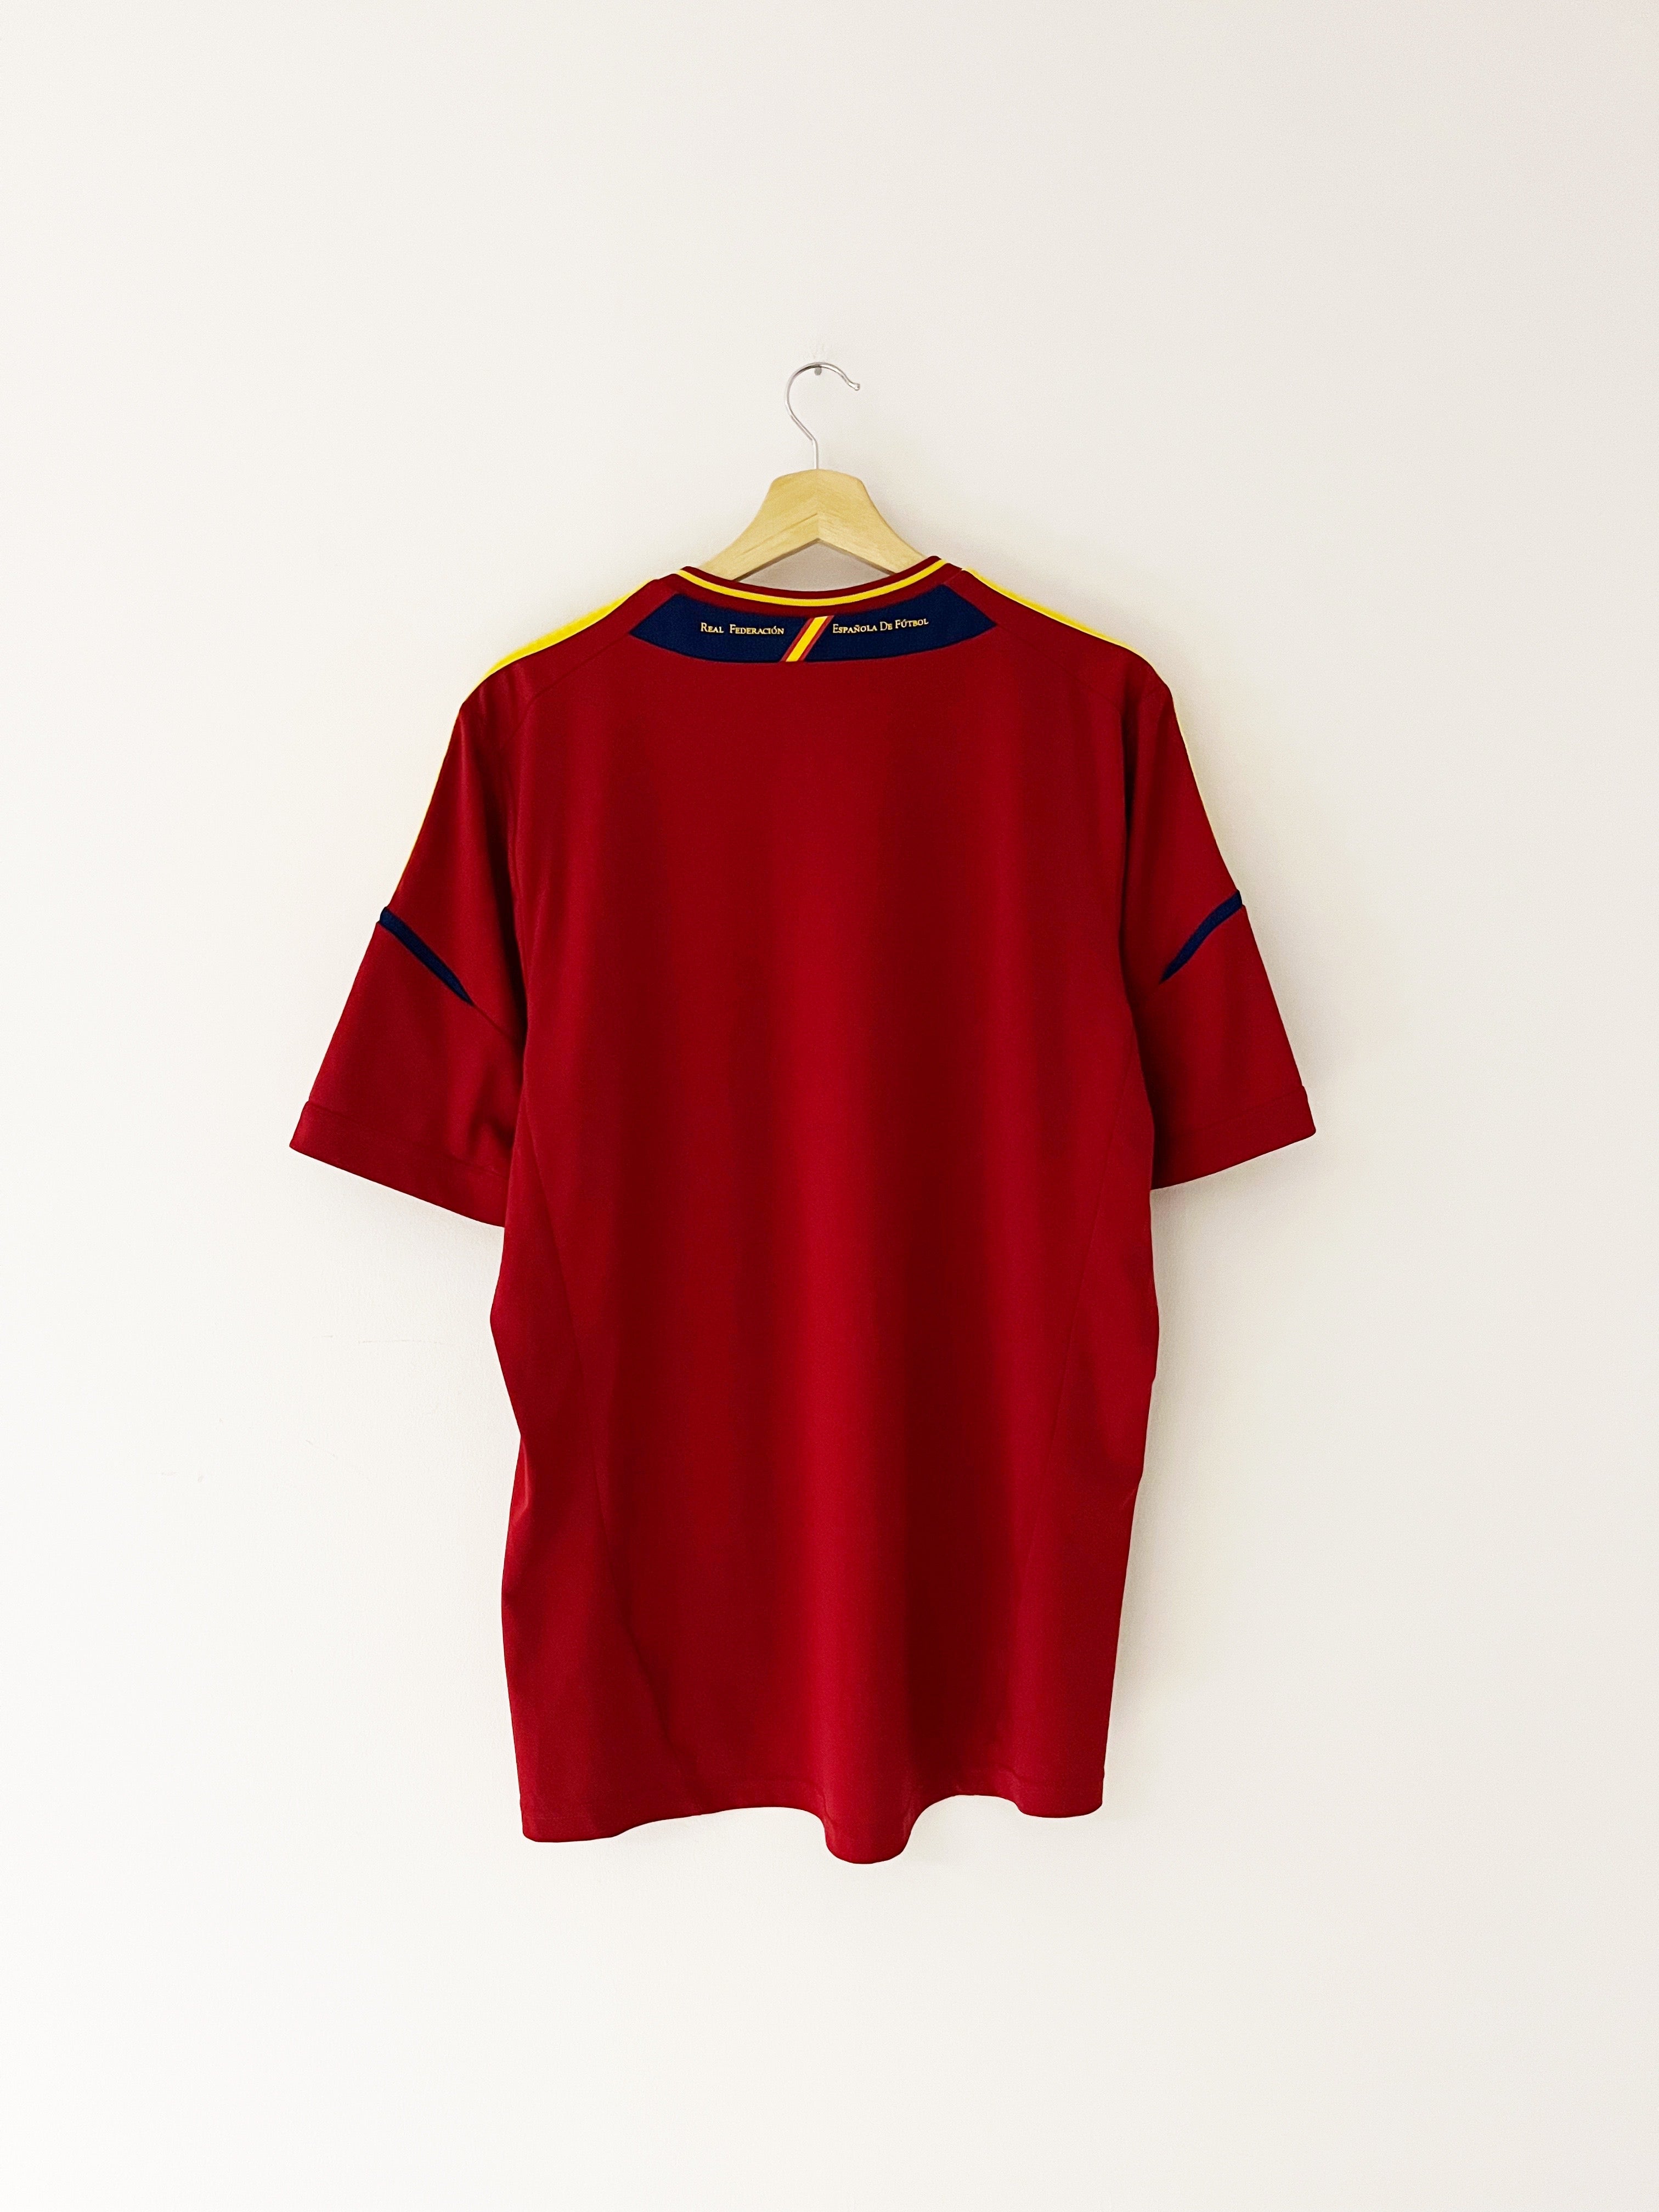 2011/12 Spain Home Shirt (XL) 9/10